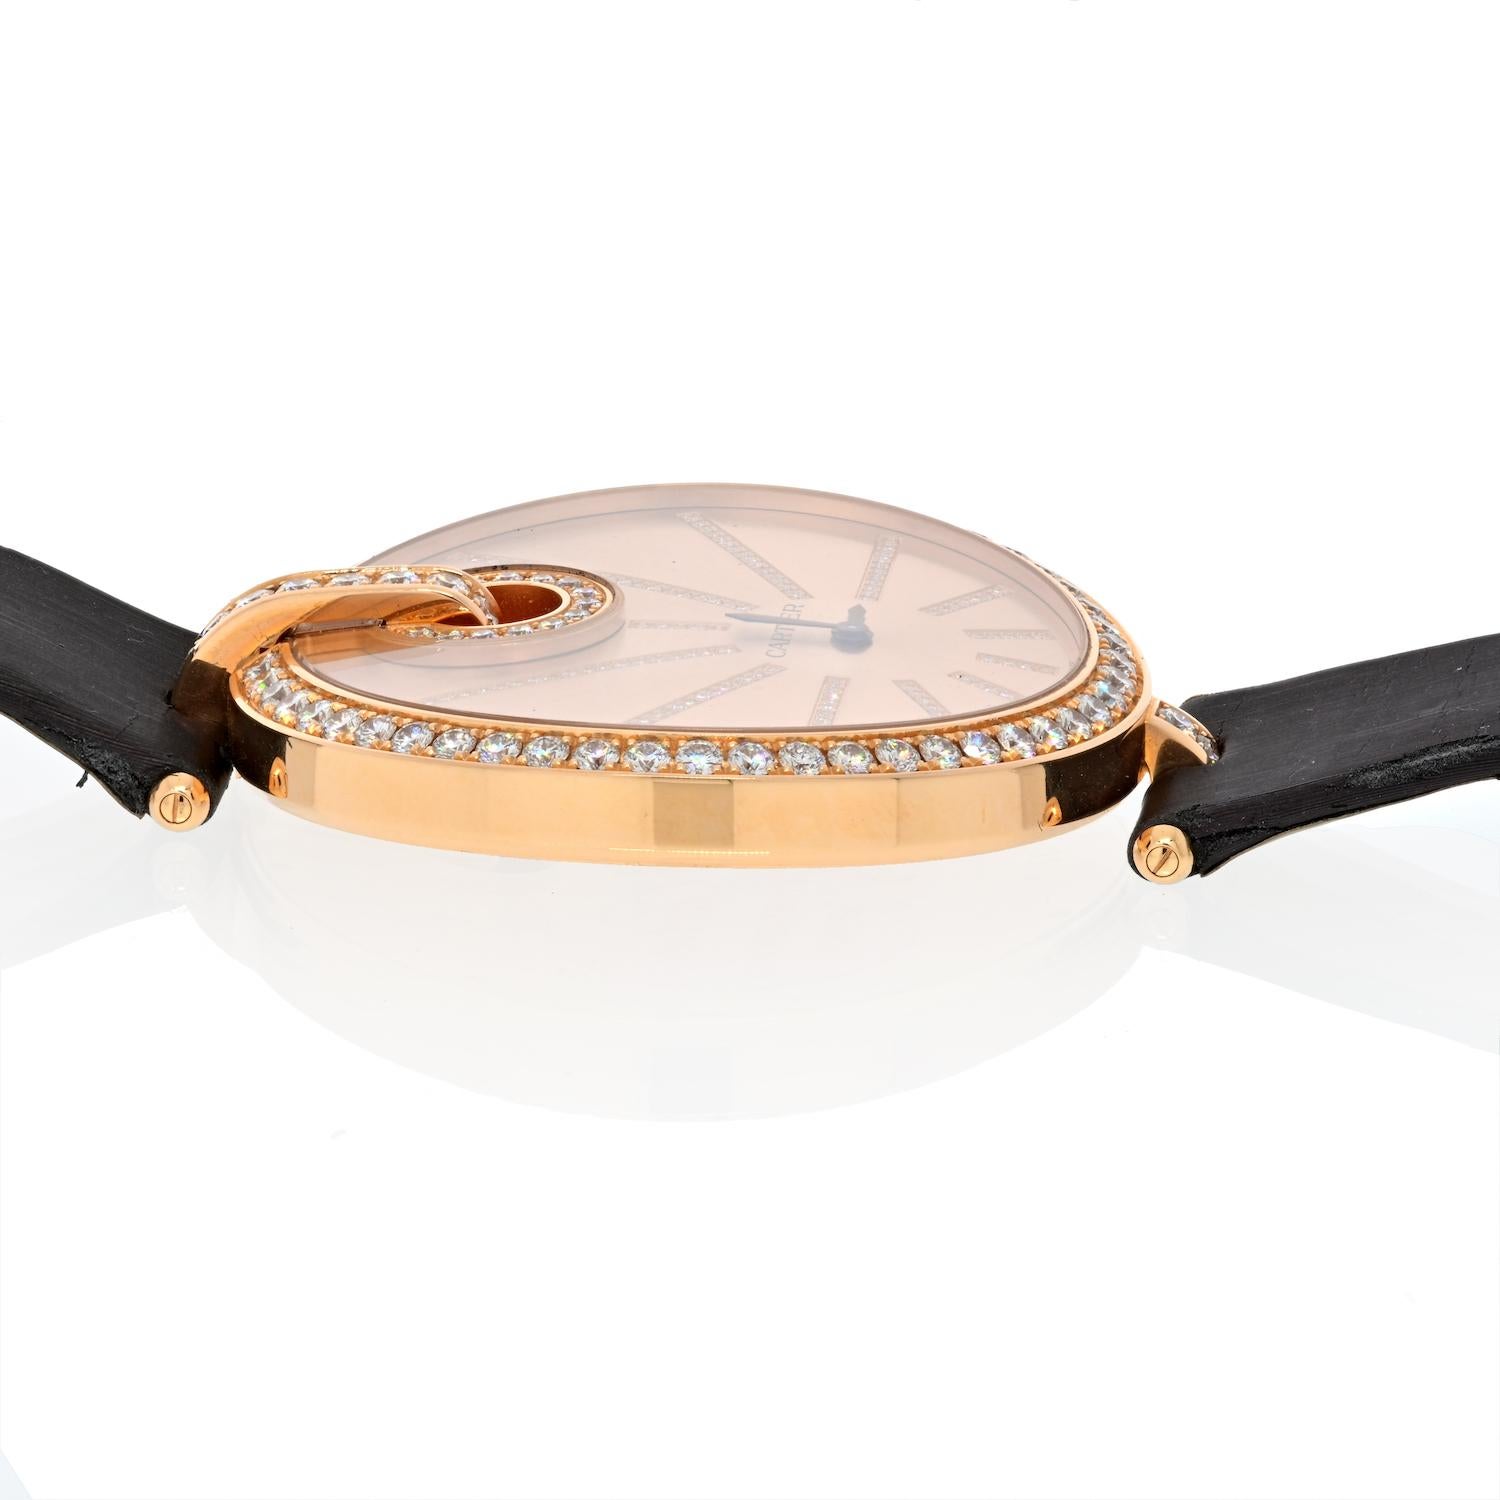 Diese Cartier Captive de Cartier 18K Rose Gold Diamond Lünette 50 mm Uhr, Referenznummer WG600003, verfügt über ein 18K Rose Gold Gehäuse mit einem Durchmesser von 50 mm. 

Dieses Modell ist mit einem Quarzwerk ausgestattet. Das roségoldene